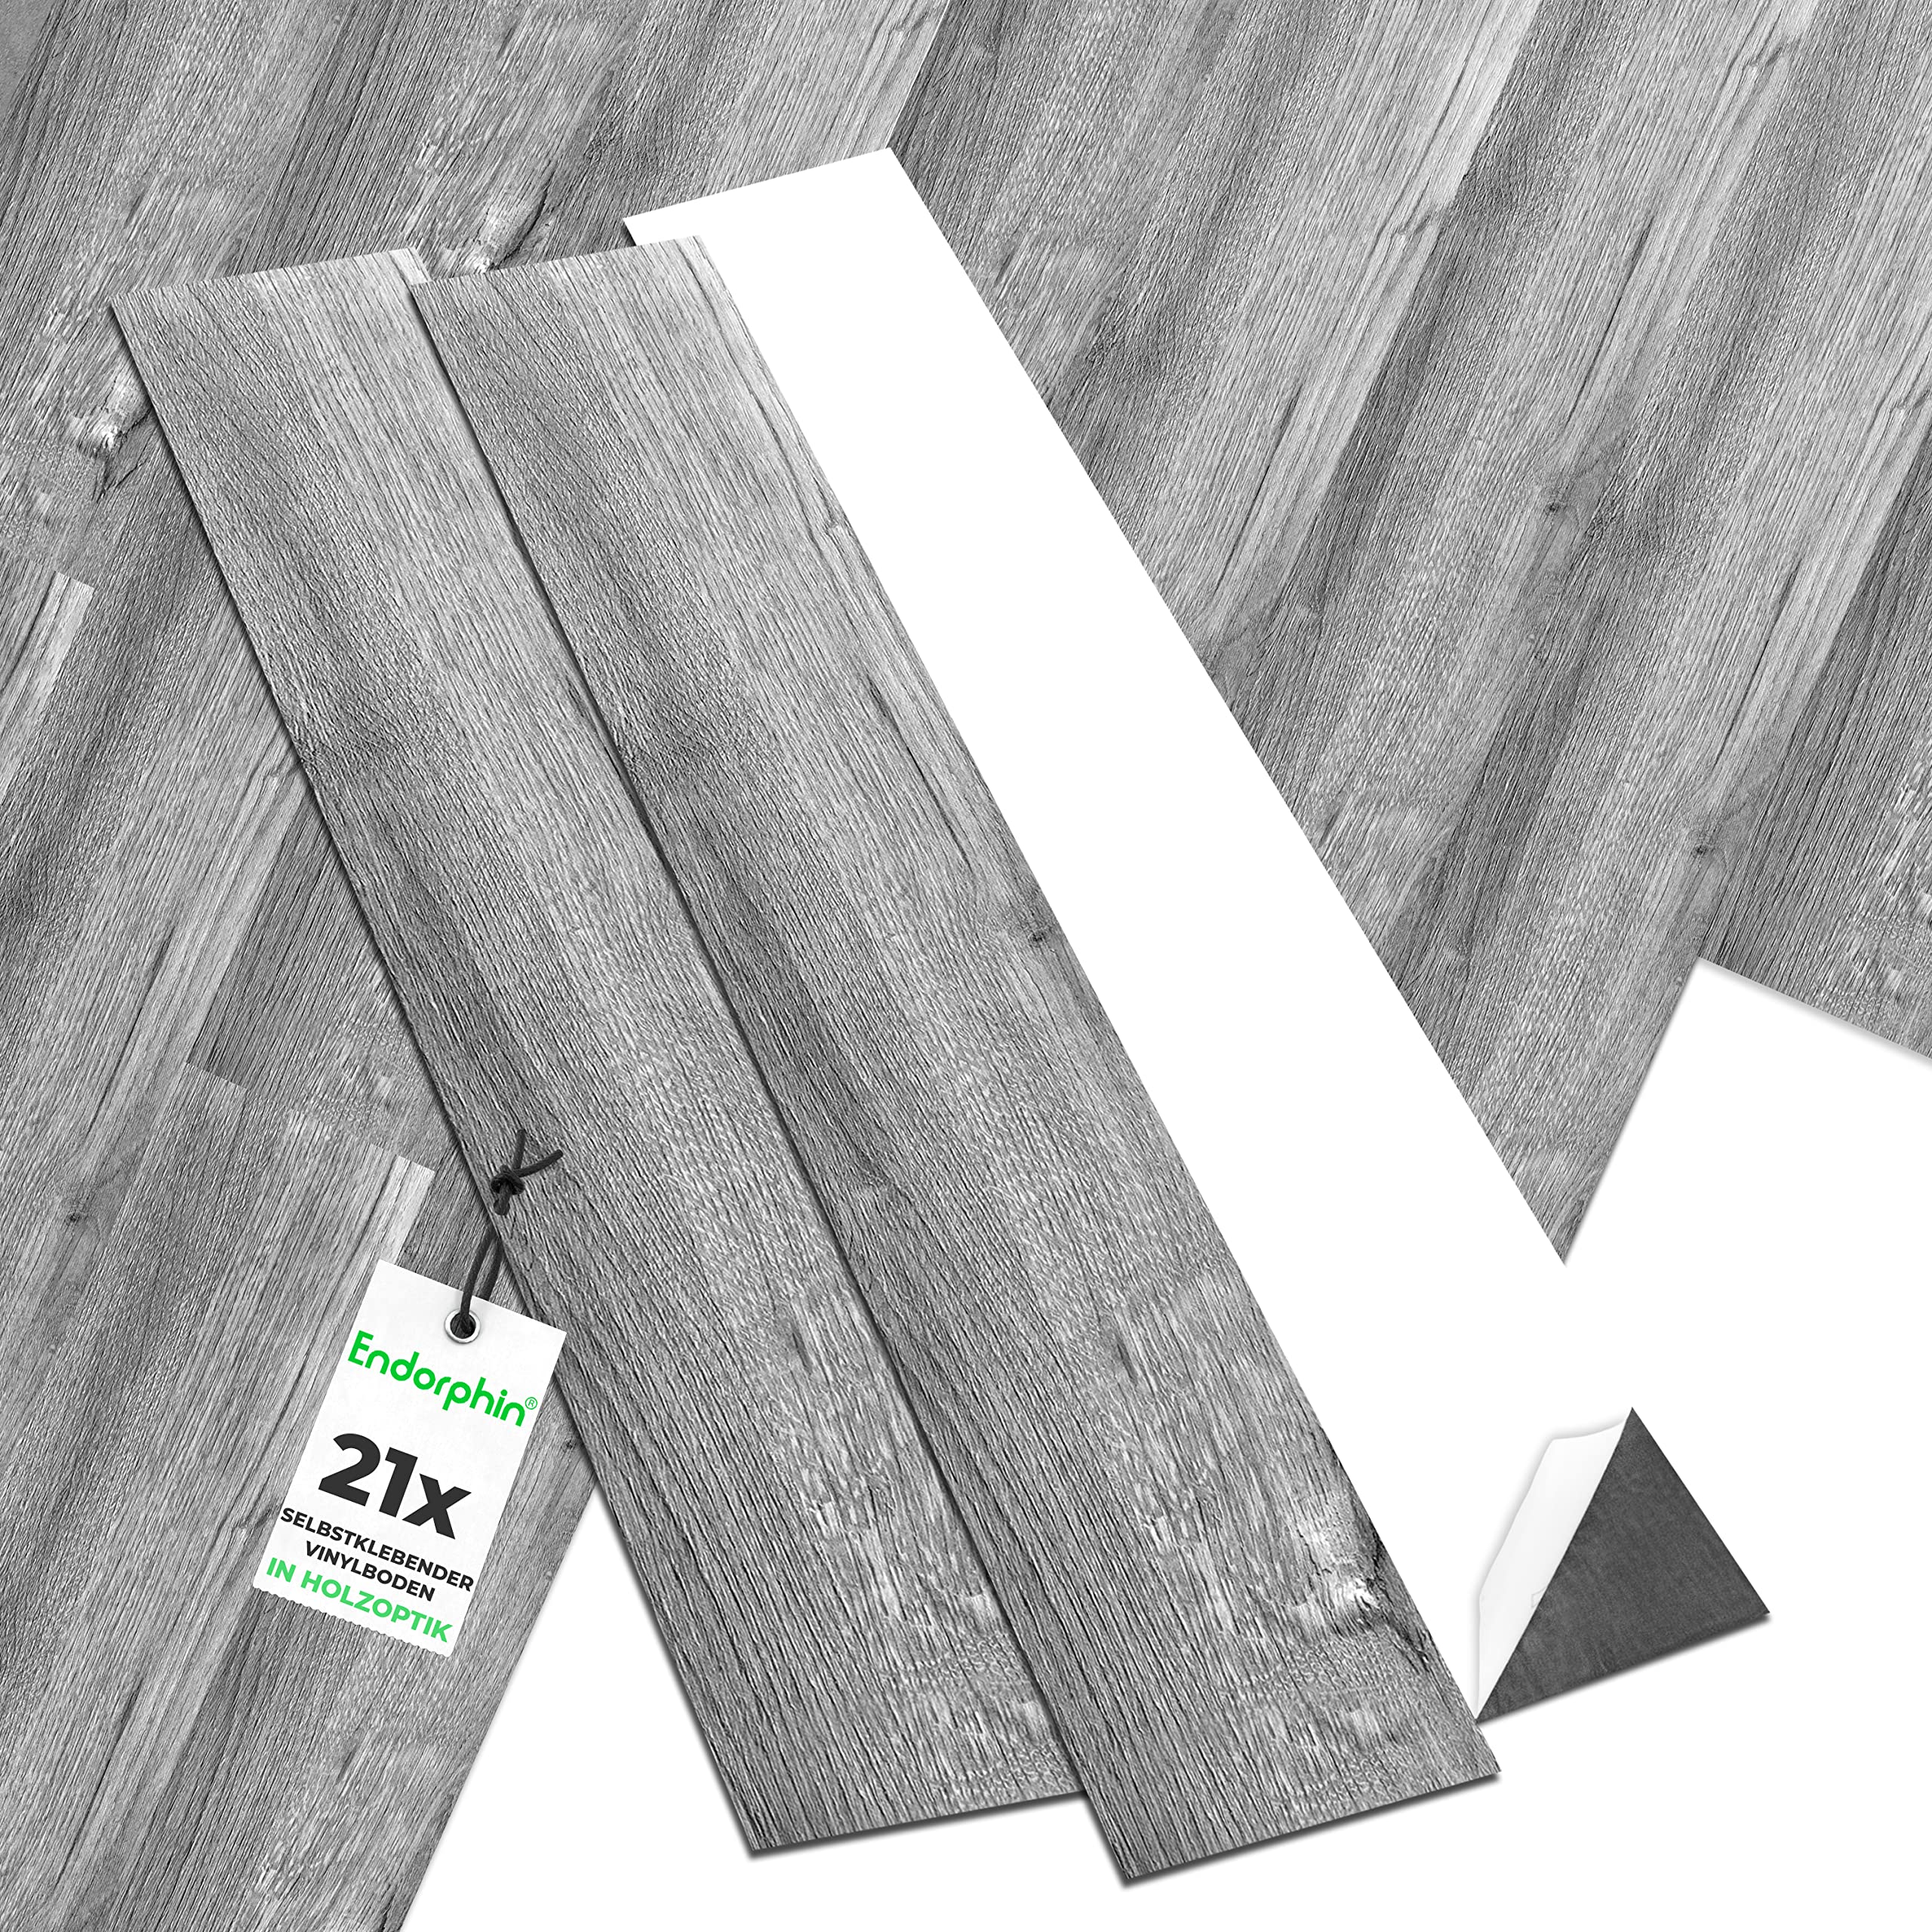 ENDORPHIN® PVC Bodenbelag in Dunkelgrau | Vinylboden mit Holz-Optik | aus recyceltem Material | 91,44 x 15,24 x 0,2cm | 21 Stück für circa 2,93qm | Selbstklebender Holzboden | Klebefliesen